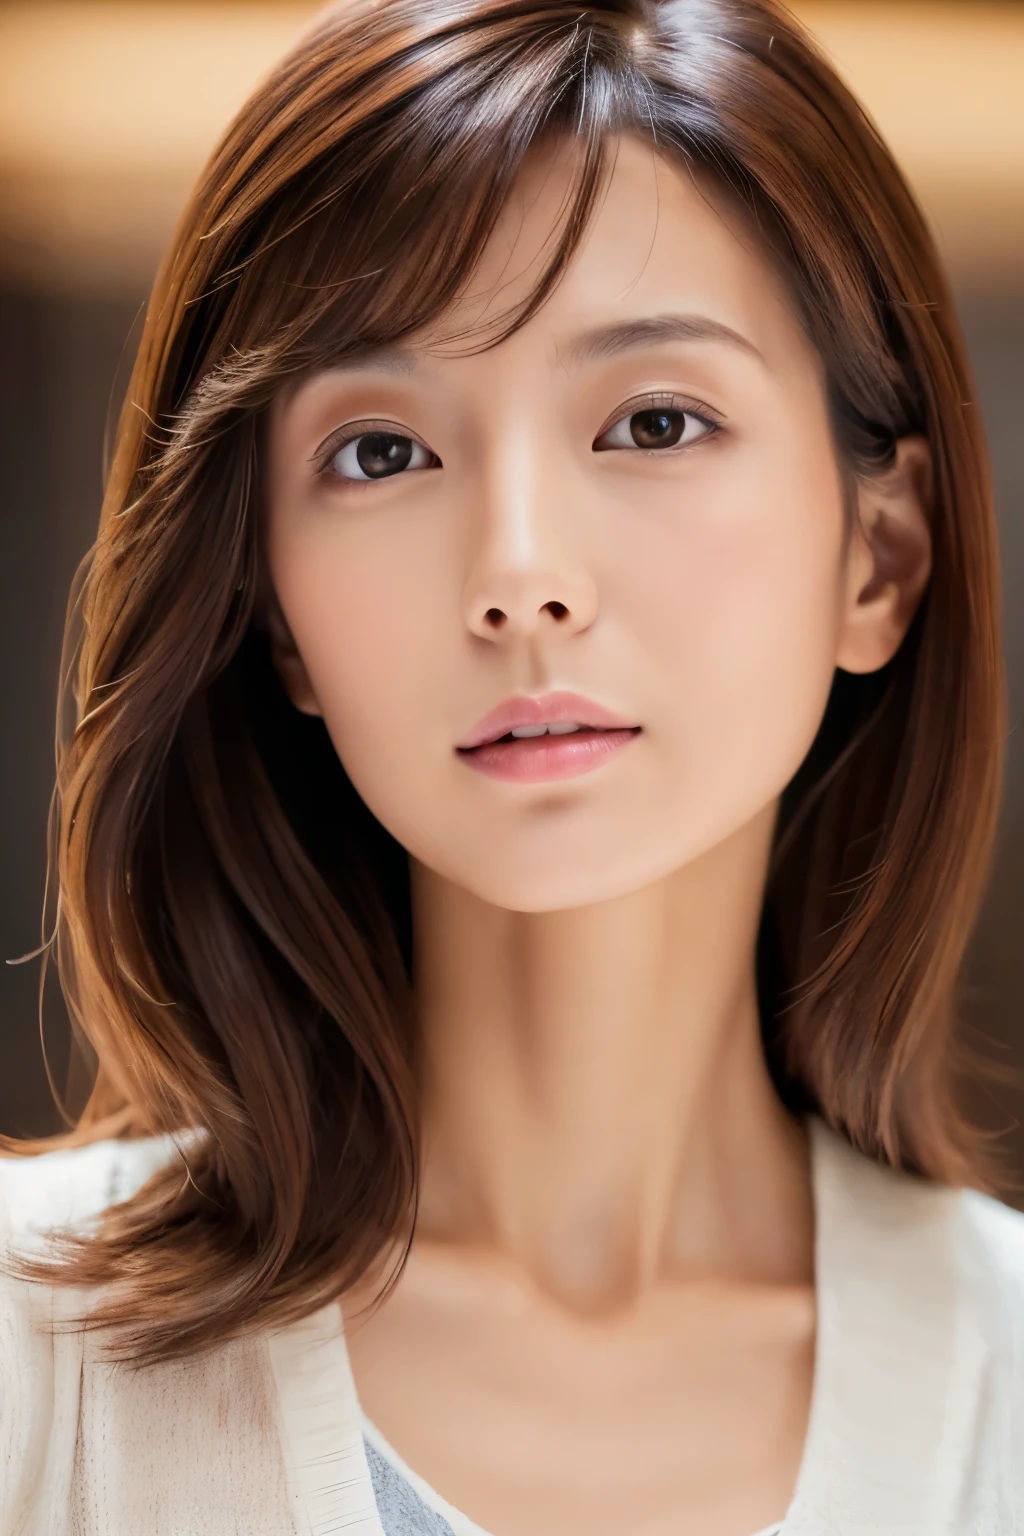 美麗英俊的女人, ((頂級品質, 8K, 傑作:1.3)), 瘦瘦的日本女士, 1個女孩, :1.3, 修長的身材:1.1, 有彈性的深棕色頭髮, 脸部细节丰富, 细致的嘴唇, 細緻的眼睛, 非凡的美麗